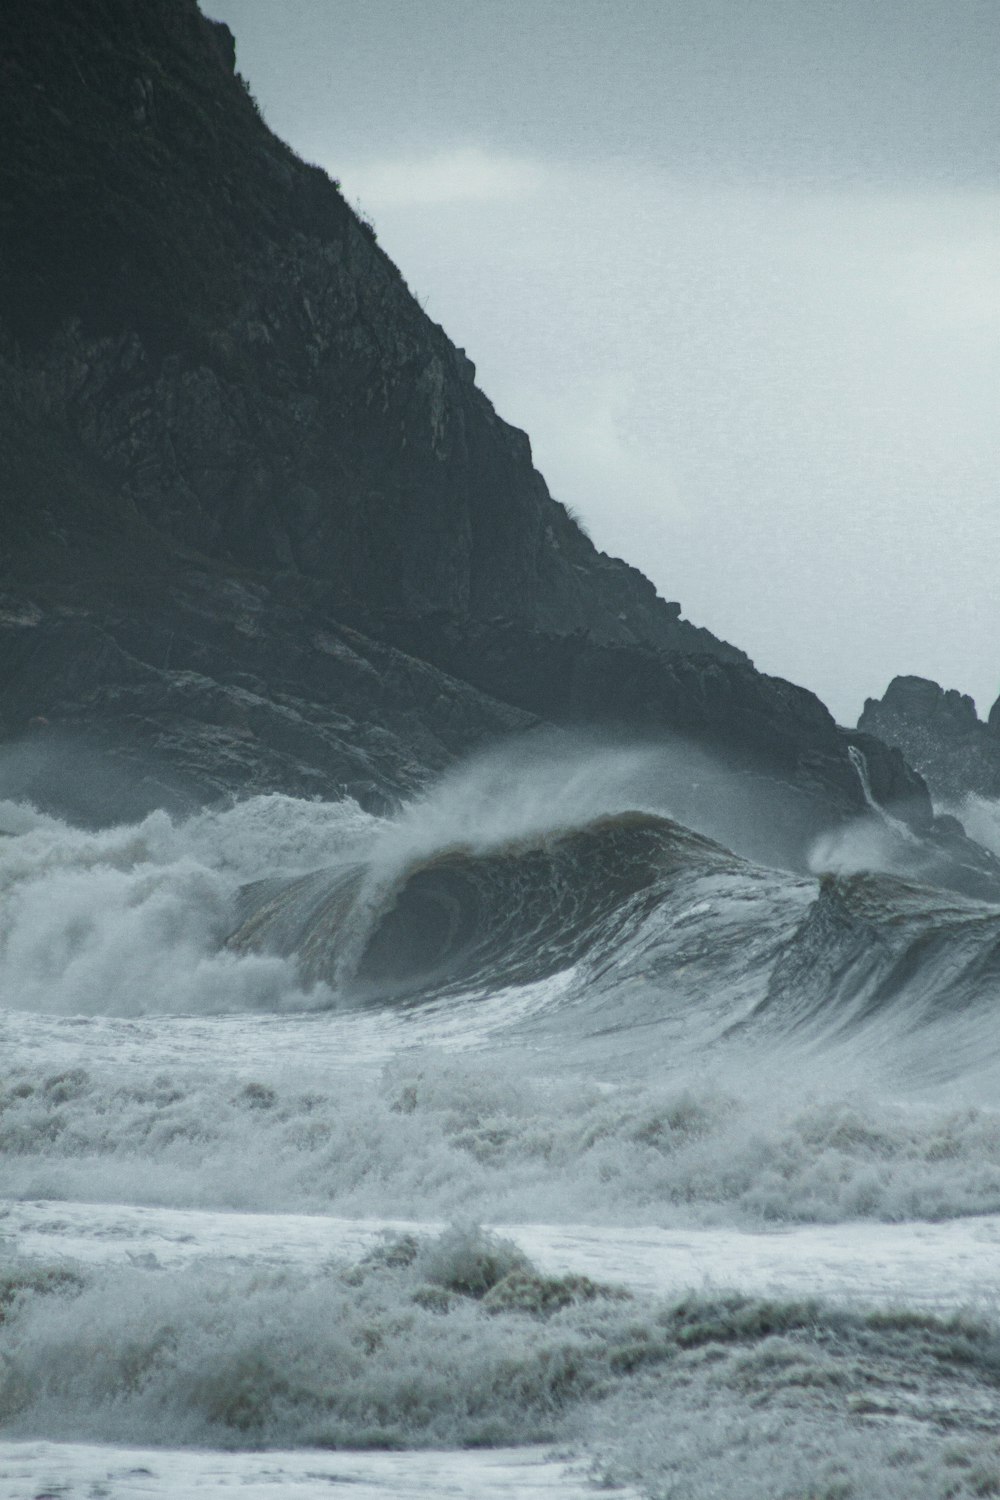 ocean waves crashing on shore